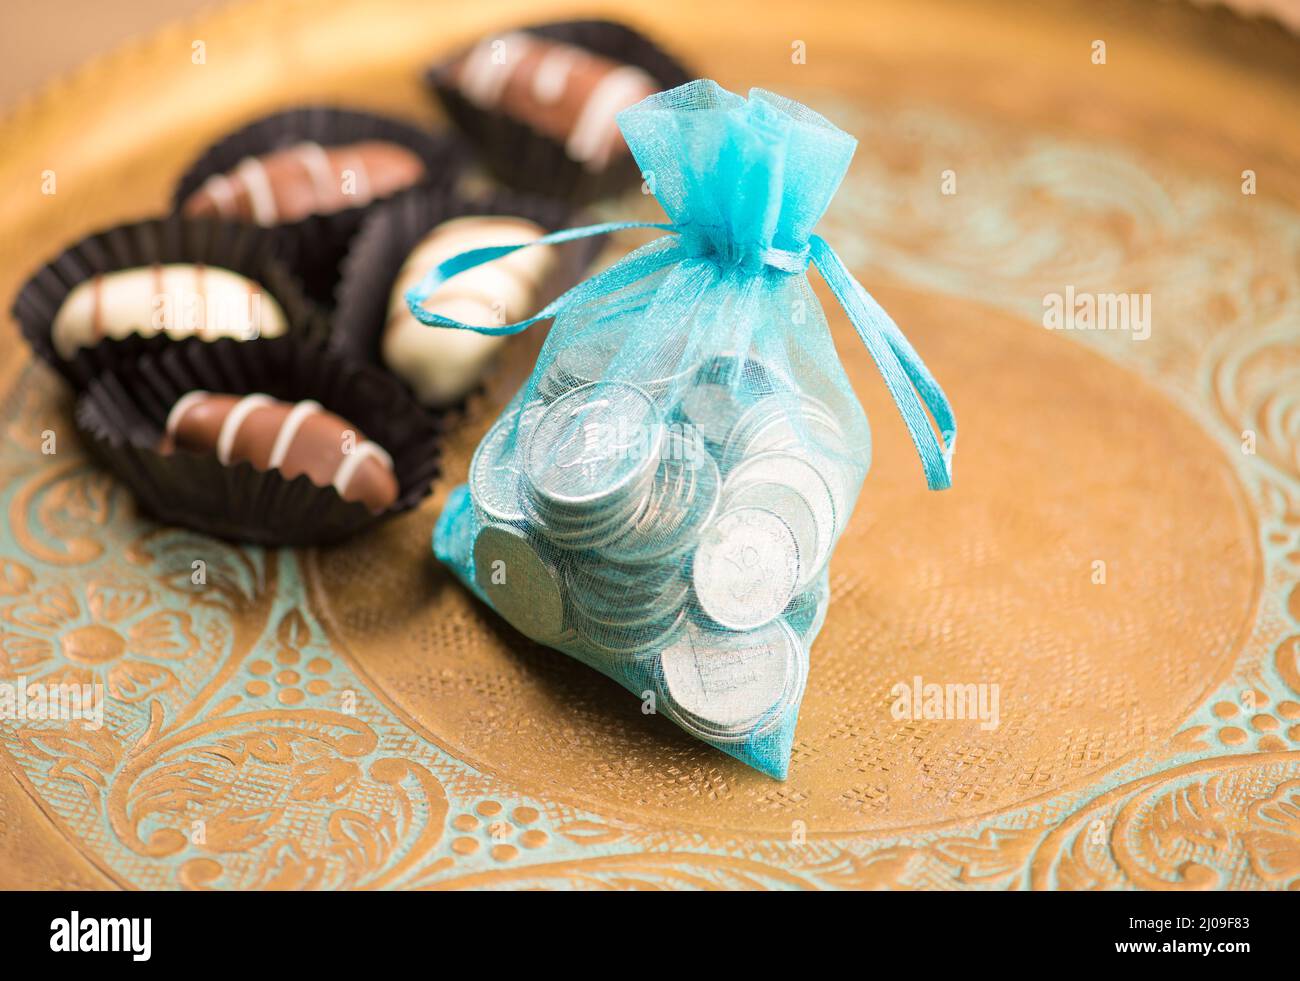 Monete di Dirham degli Emirati Arabi Uniti in una borsa di fantasia con i cioccolatini di data. Donazioni in denaro o beneficenza in occasione del festival Eid. Foto Stock